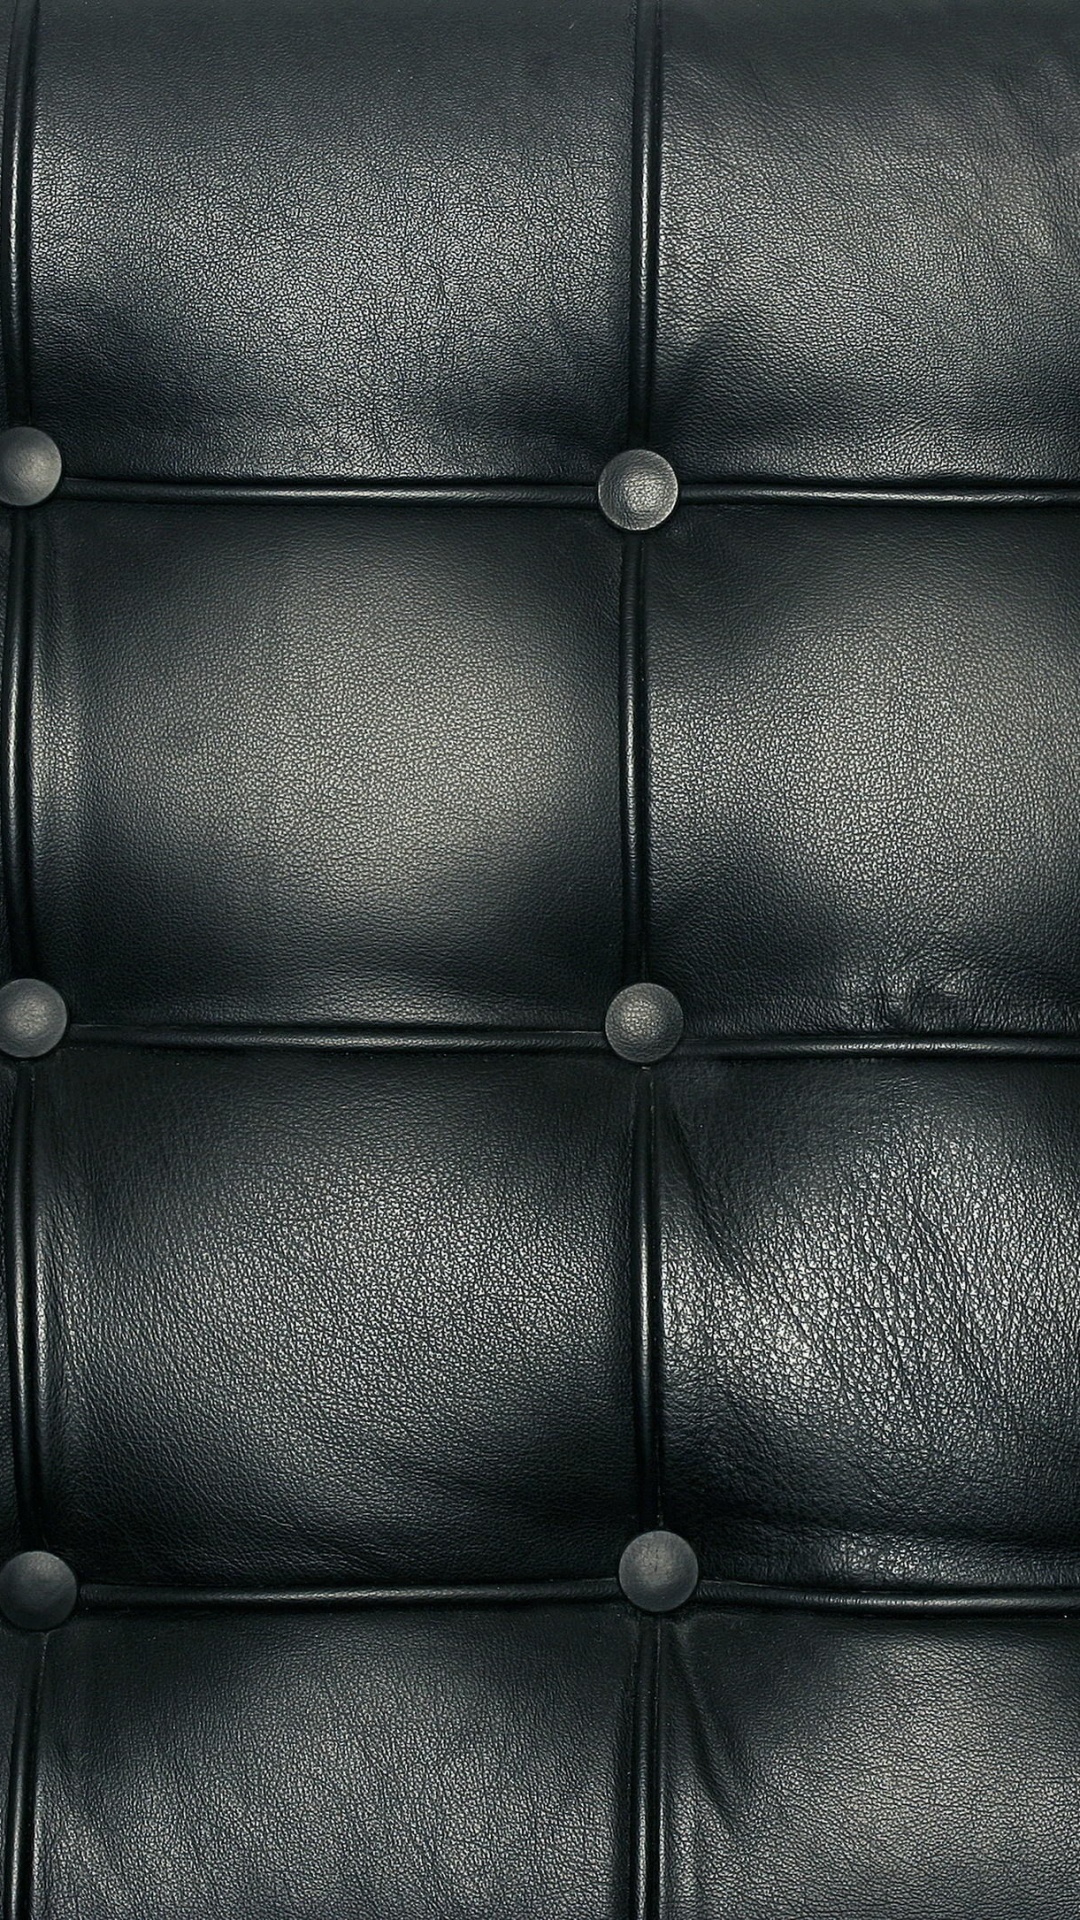 Textil de Cuero Negro Con Agujero. Wallpaper in 1080x1920 Resolution